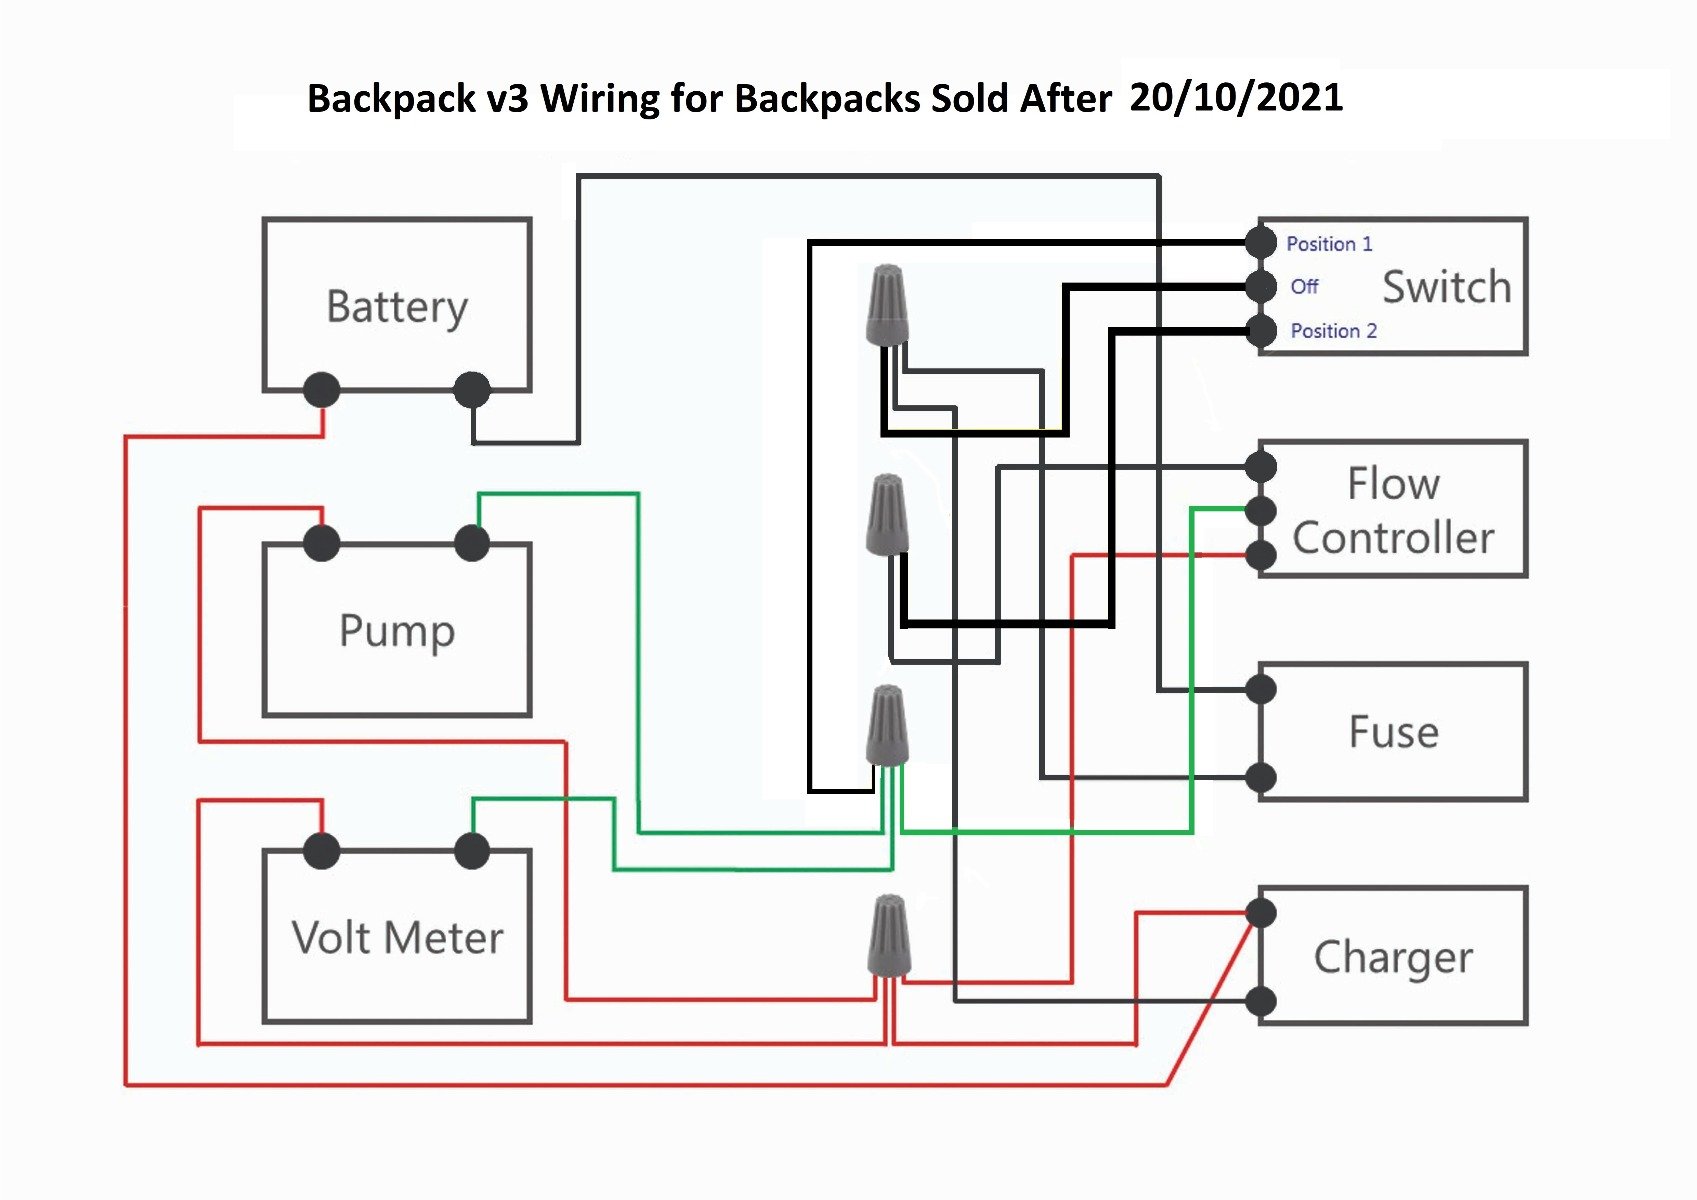 Backpack_v3_Wiring_for_Backpacks_Sold_After_20-10-2021.jpg